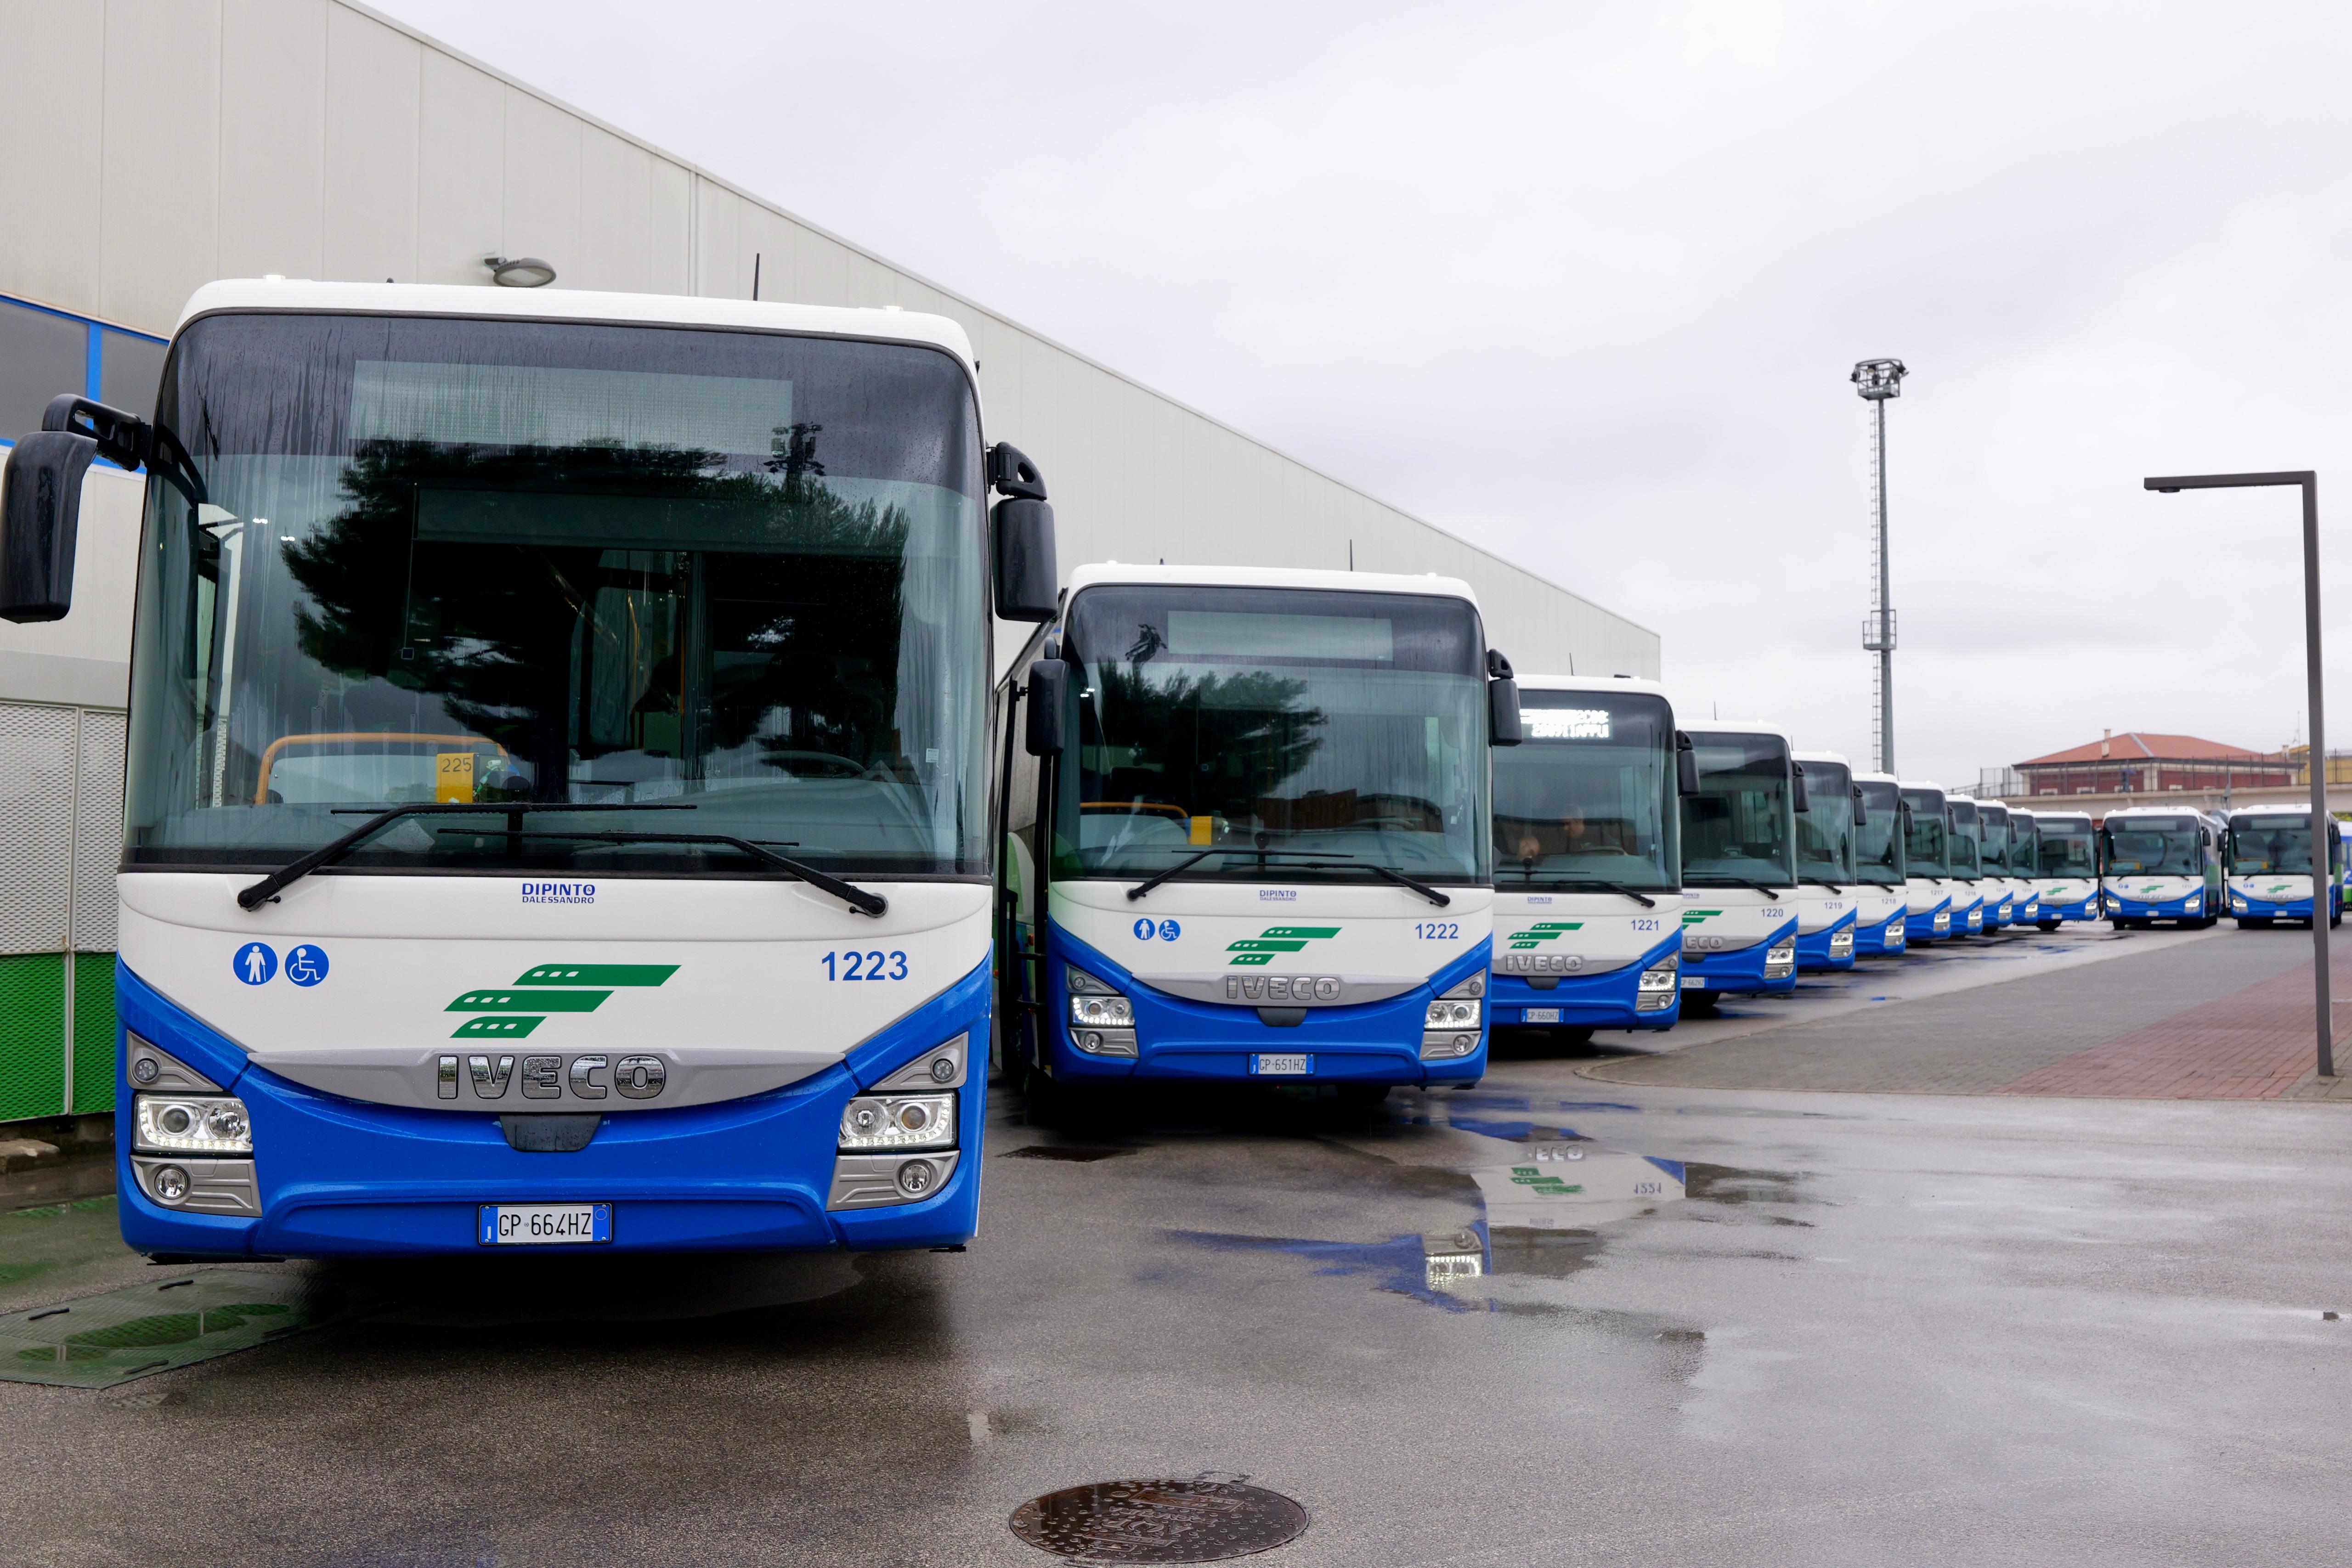 Galleria Trasporti, inaugurati 15 nuovi autobus FAL: l’azienda ha completato il rinnovo del parco mezzi pugliese, tra i più giovani d’Italia - Diapositiva 13 di 13